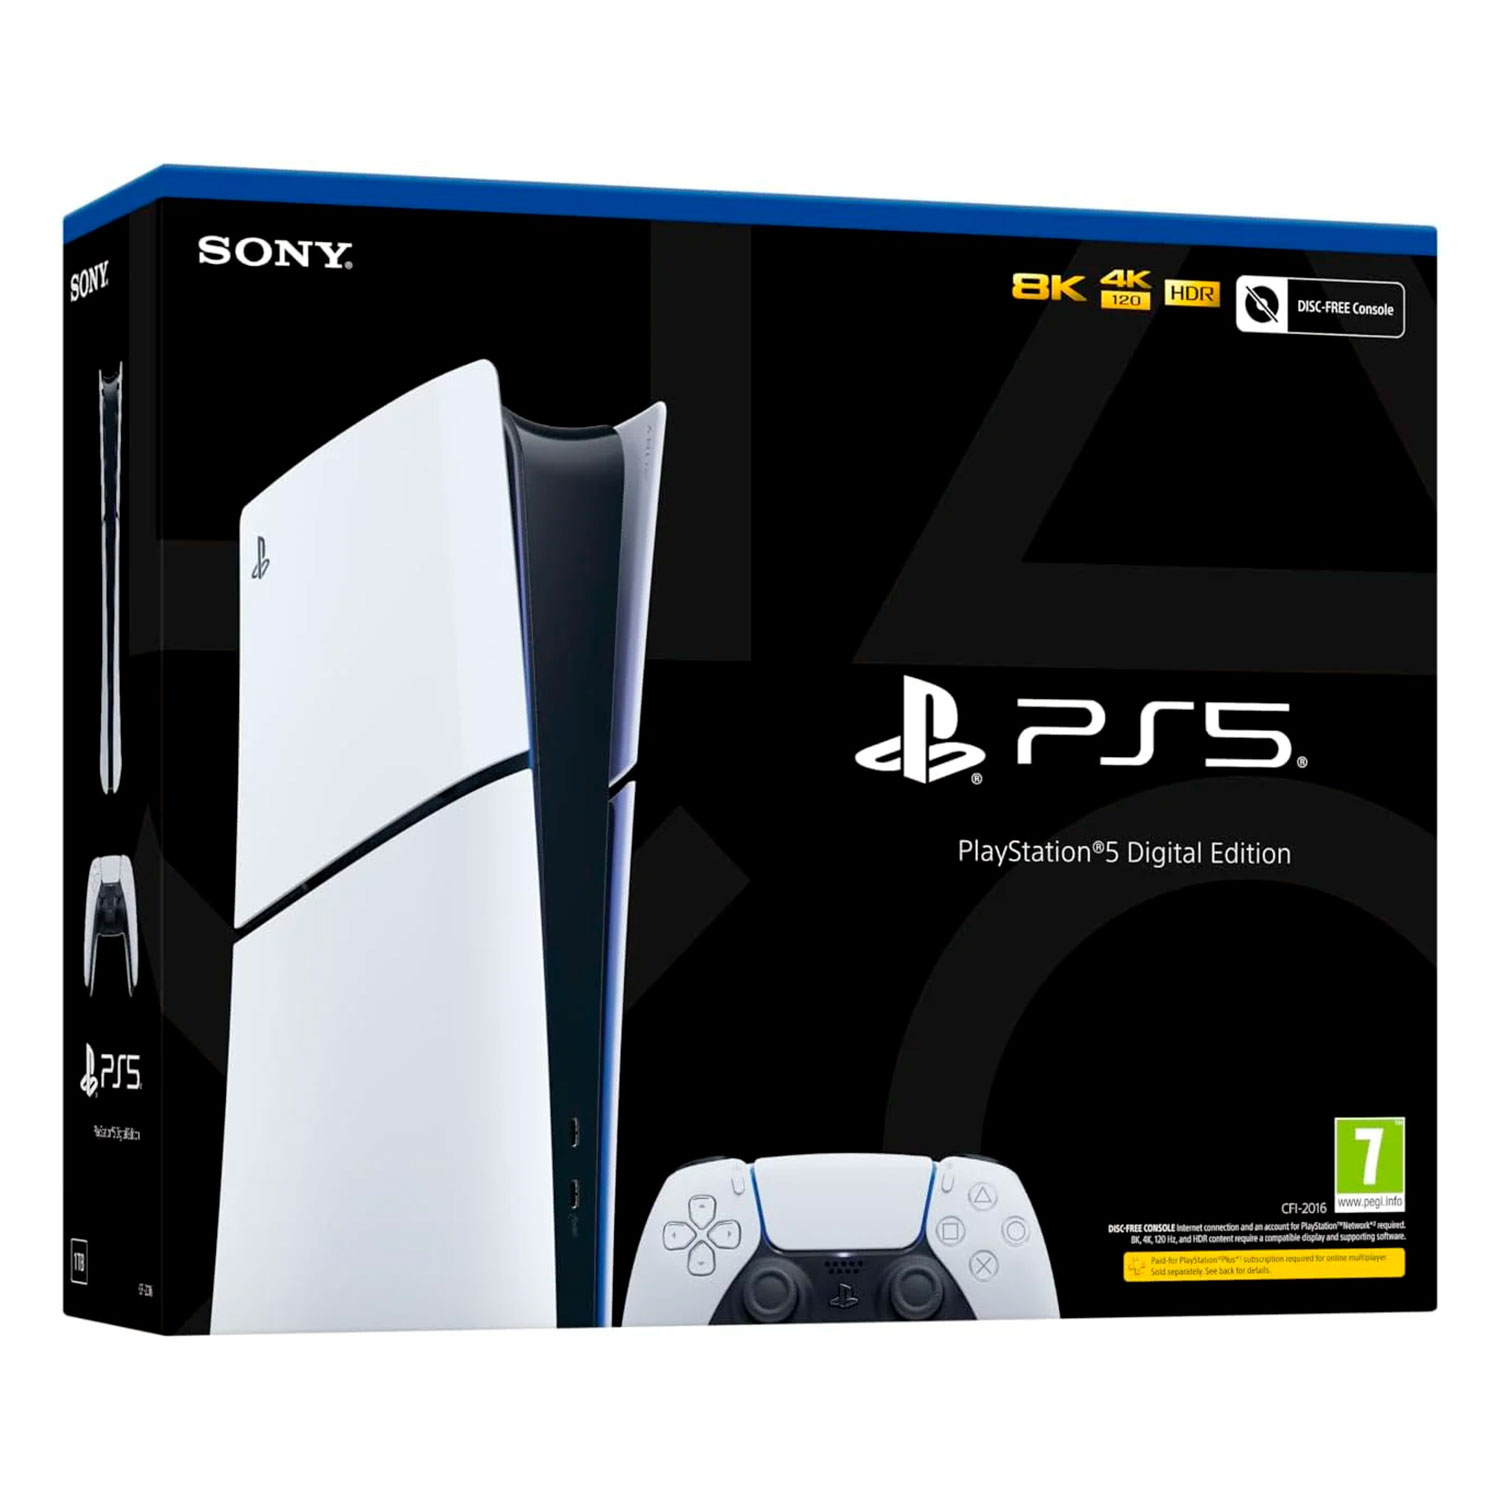 Console Sony Playstation 5 Slim CFI-2016B Edição Digital 1TB Europeu
